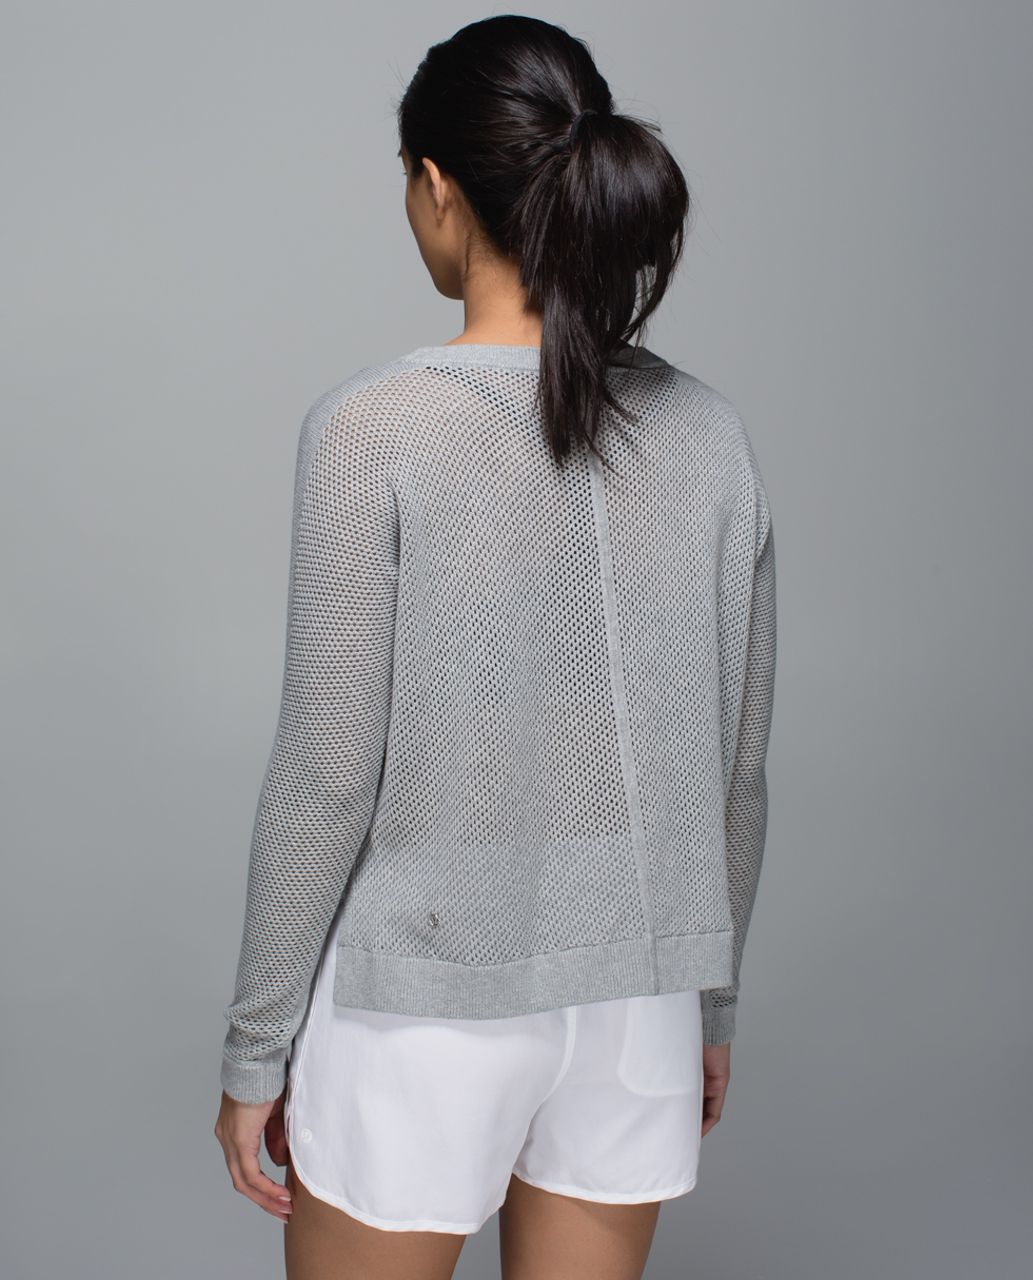 Lululemon Bhakti Life Sweater - Heathered Medium Grey